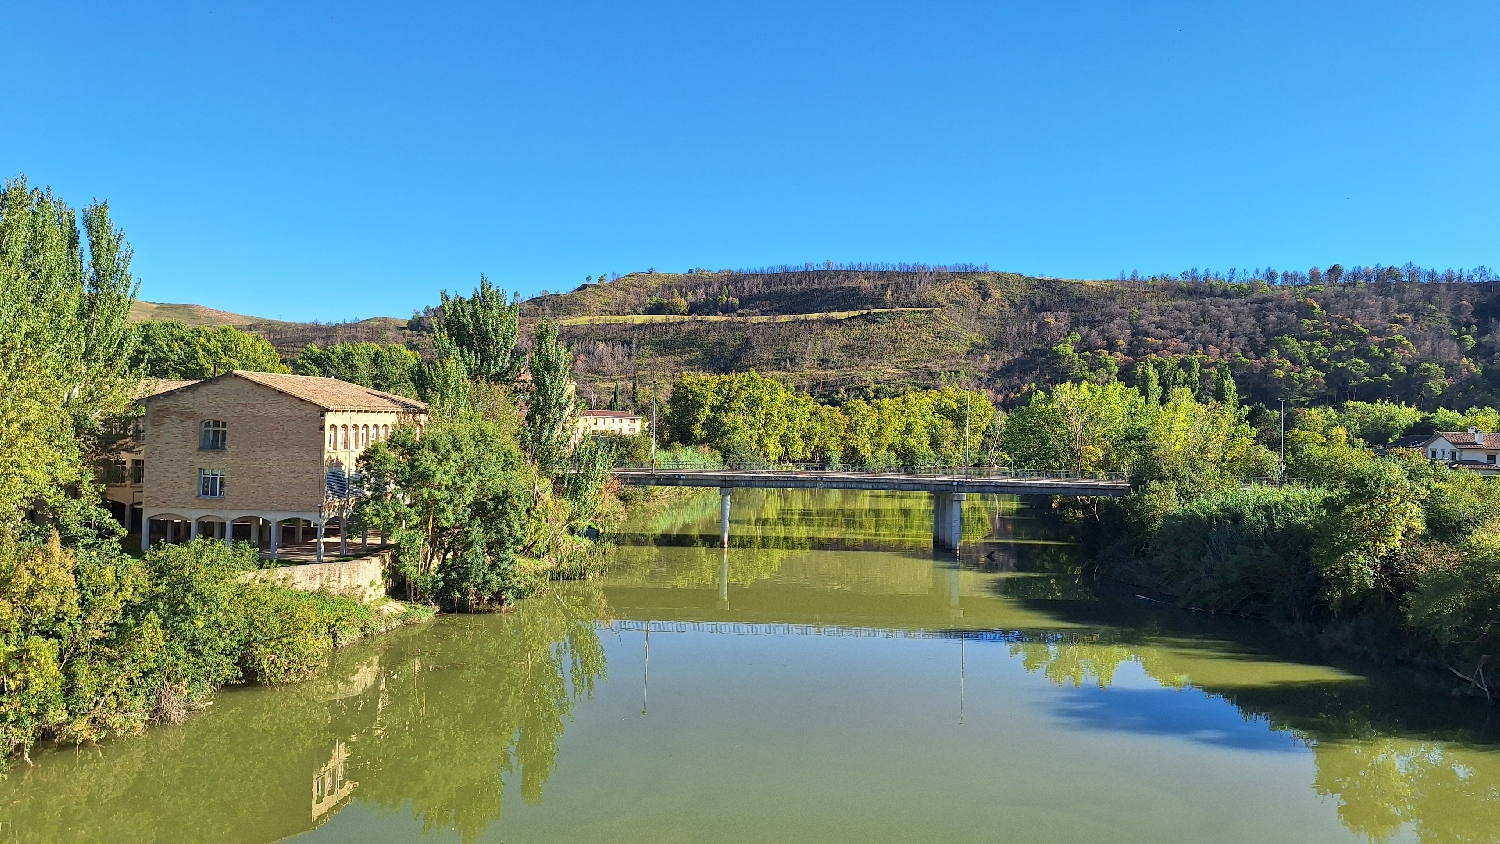 El Camino, Aragon út, Francia út, Puente la Reina, a Río Arga és a közúti híd a régi gyalogos kőhídról